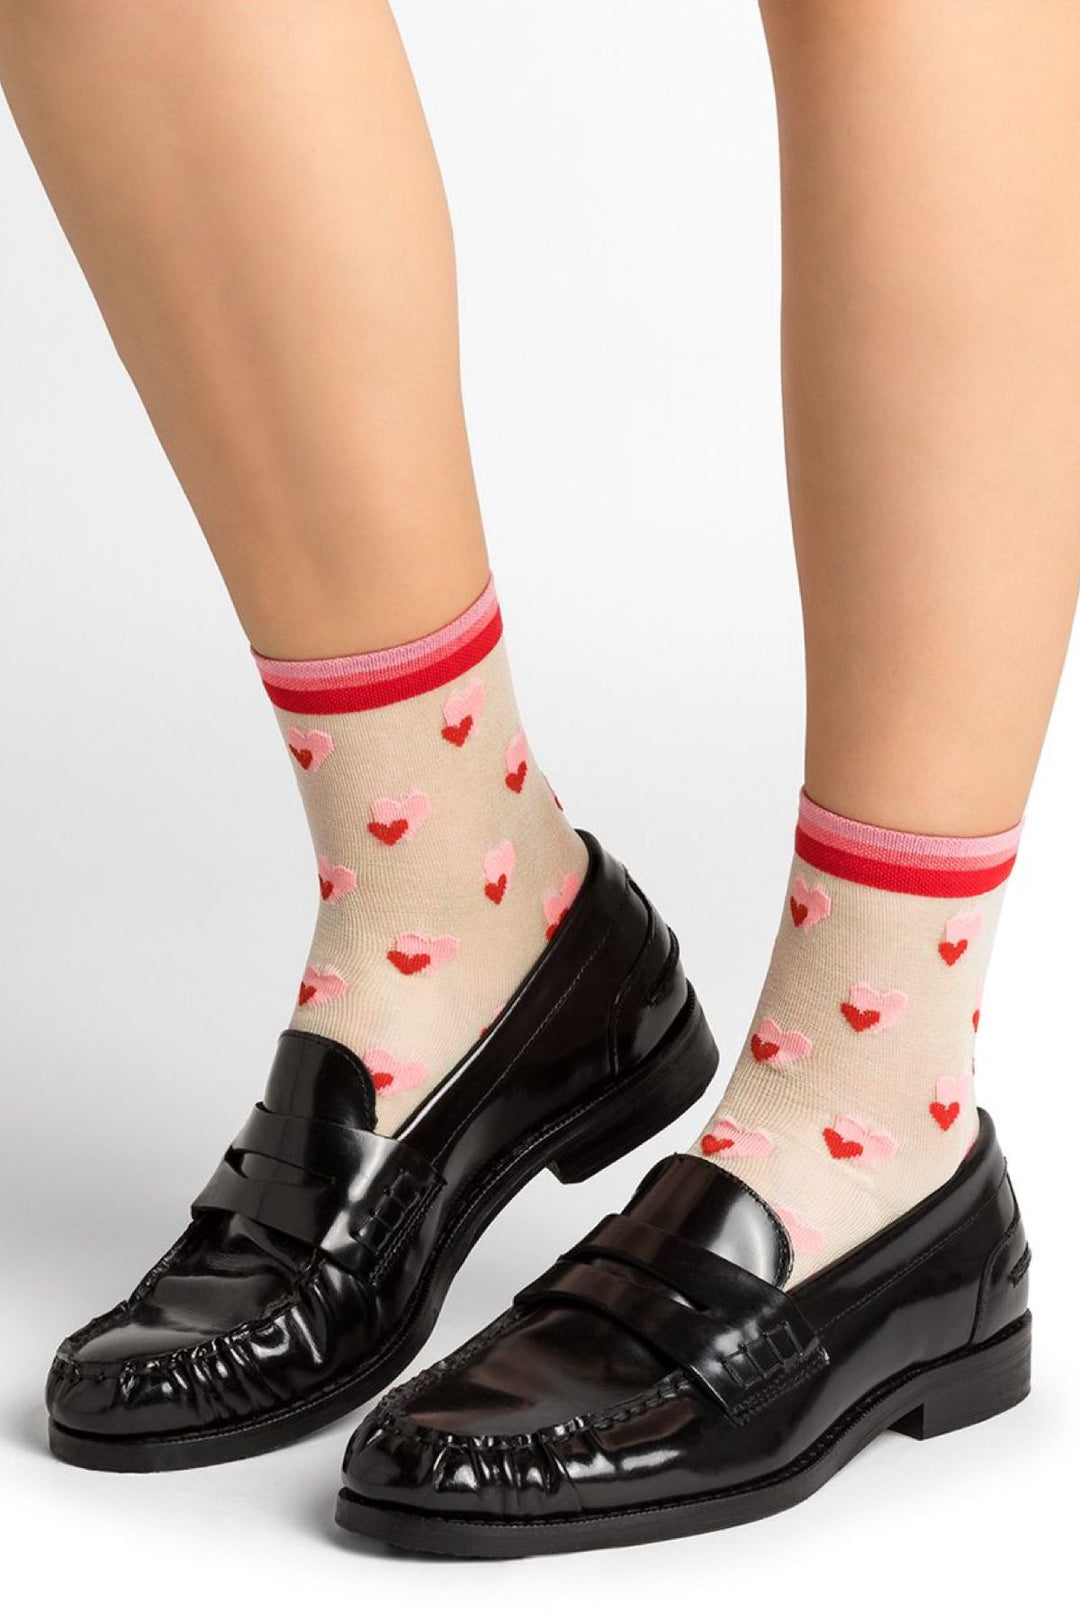 Heart pattern socks